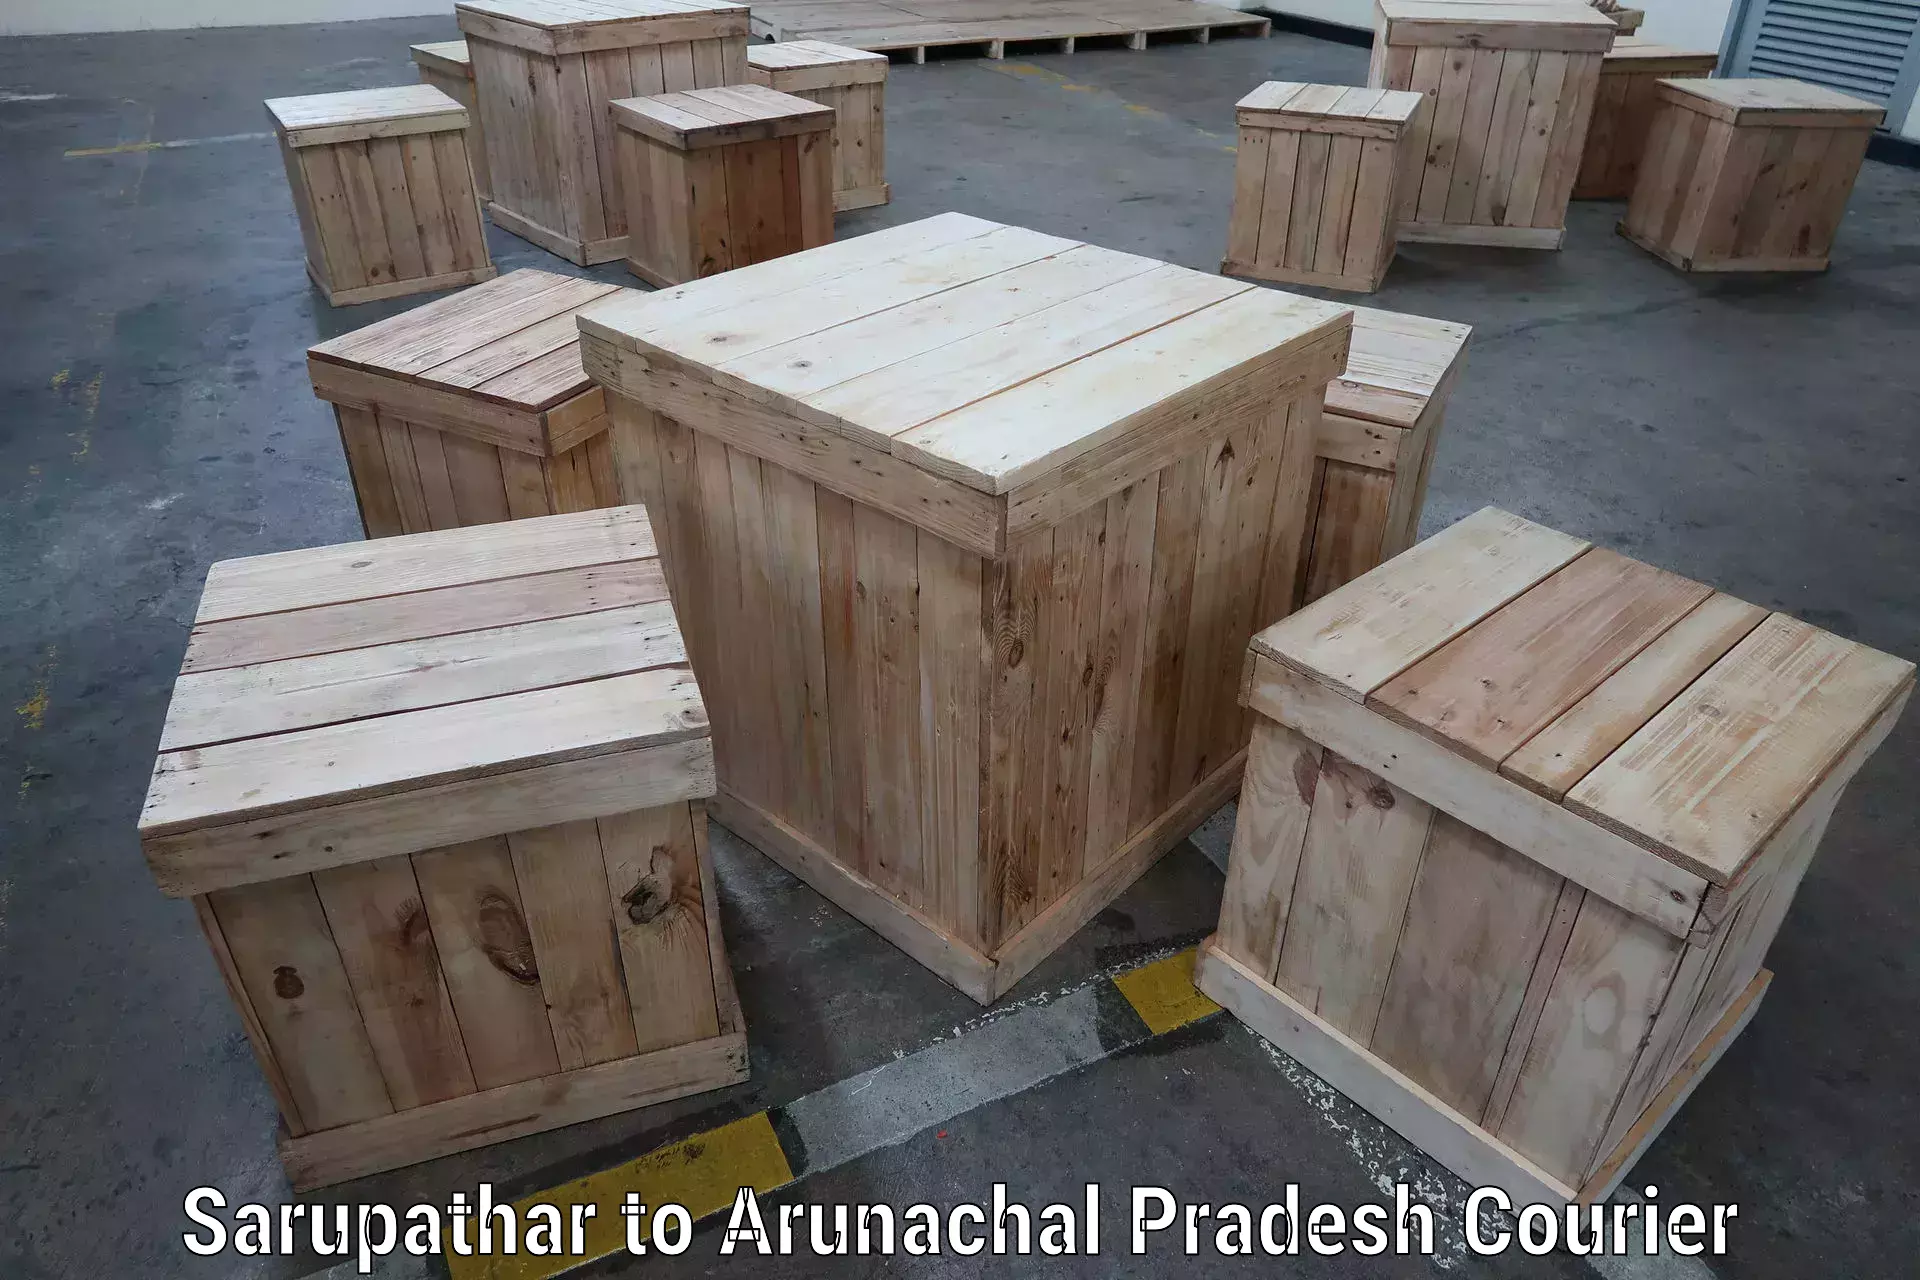 Dynamic courier services in Sarupathar to Arunachal Pradesh